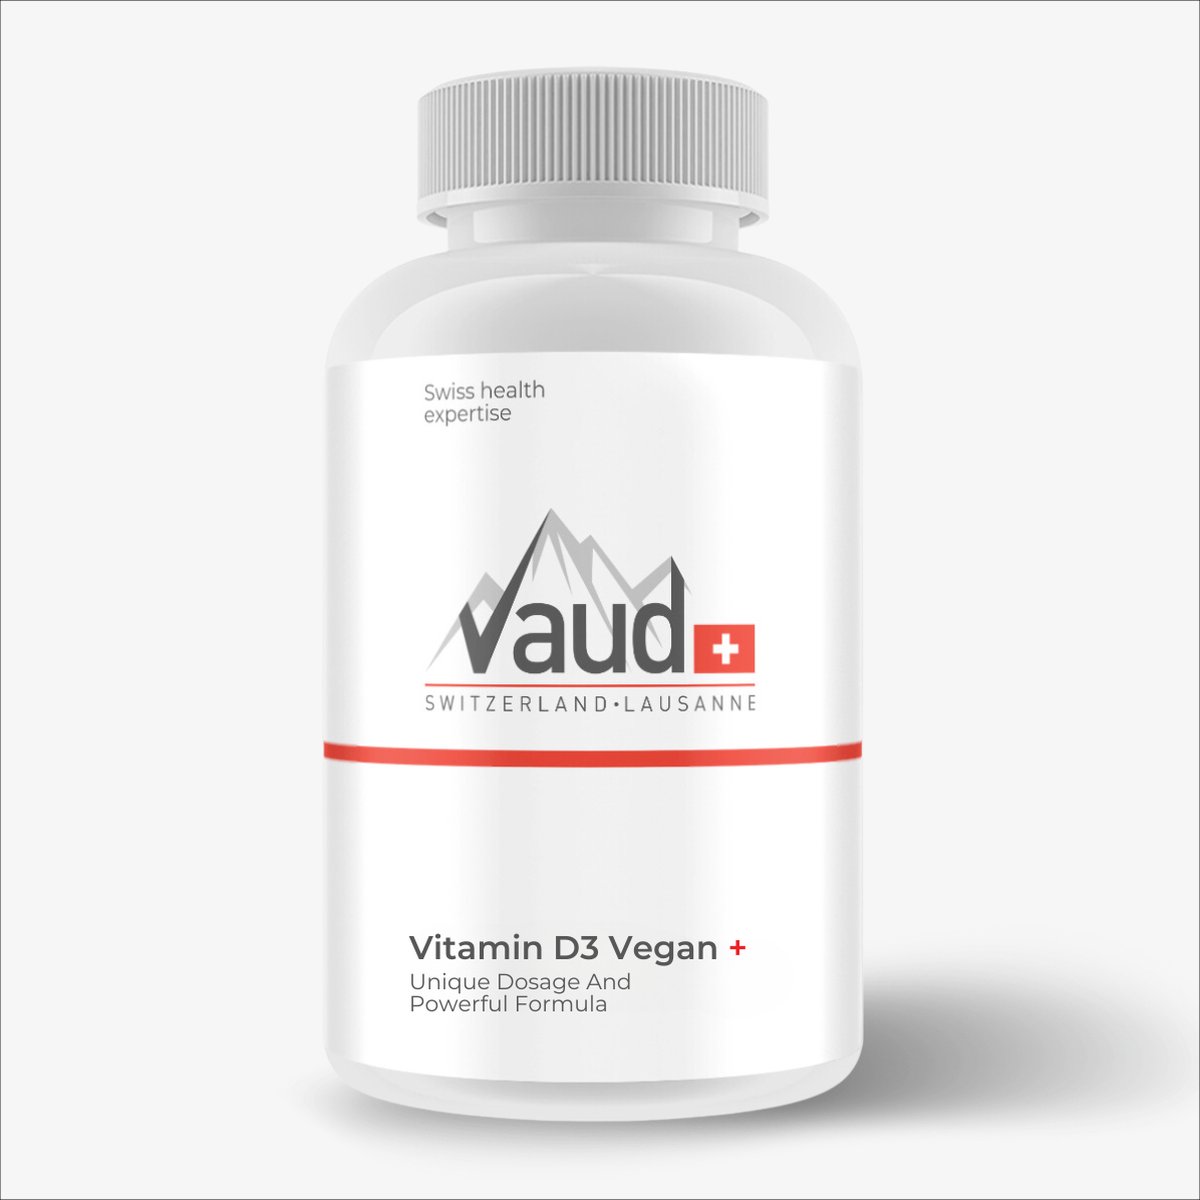 Vitamine D3 Vegan Vaud | 100 softgels | Immuunsysteem